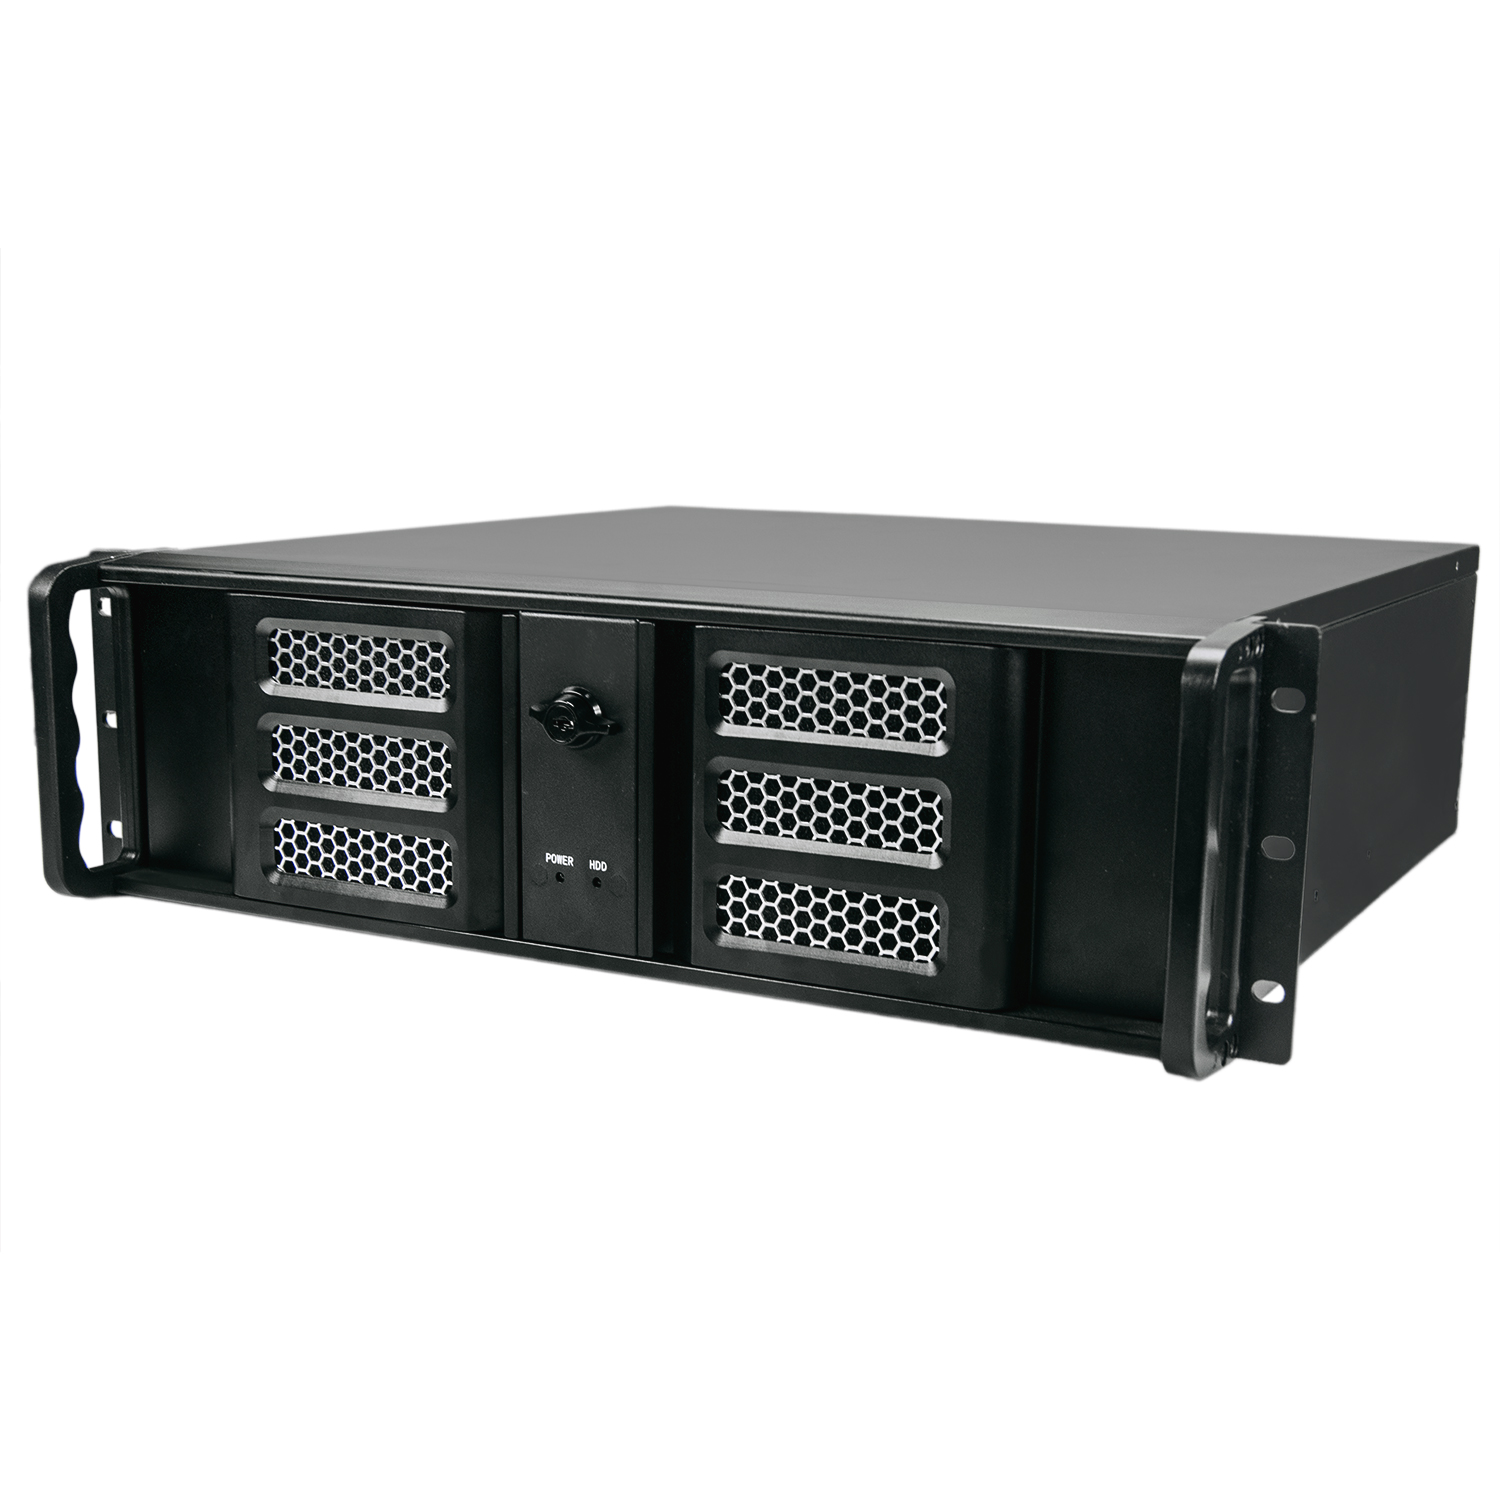 Серверный корпус 3U NR-N324D 600Вт (ATX 12"x9, 6", 3x5.25ext, 5x3.5int, 380mm) черный, NegoRack